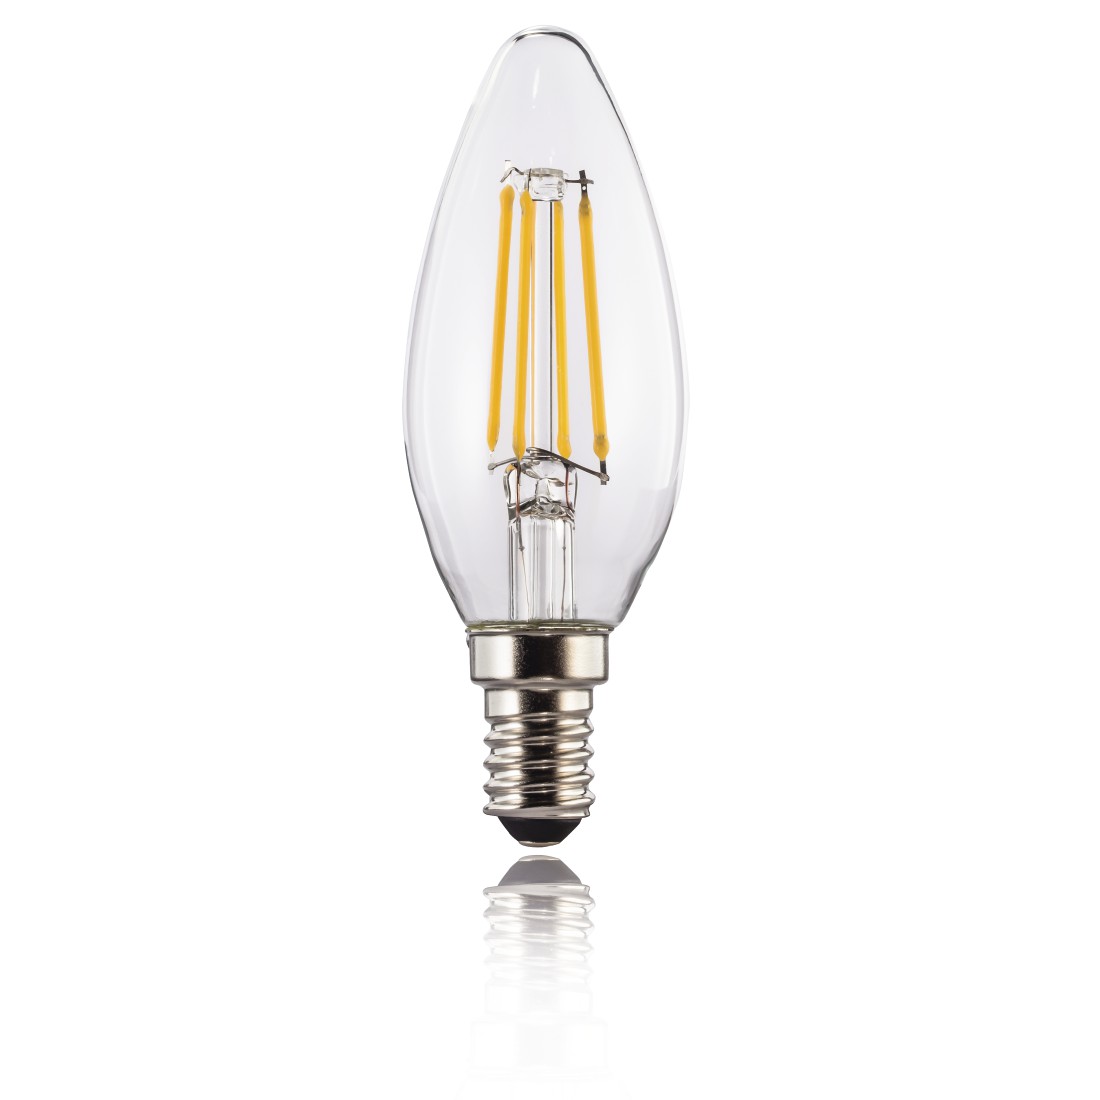 abx2 High-Res Image 2 - Xavax, Ampoule filament LED, E14, 470lm rempl. ampoule bougie 40W, blc chaud